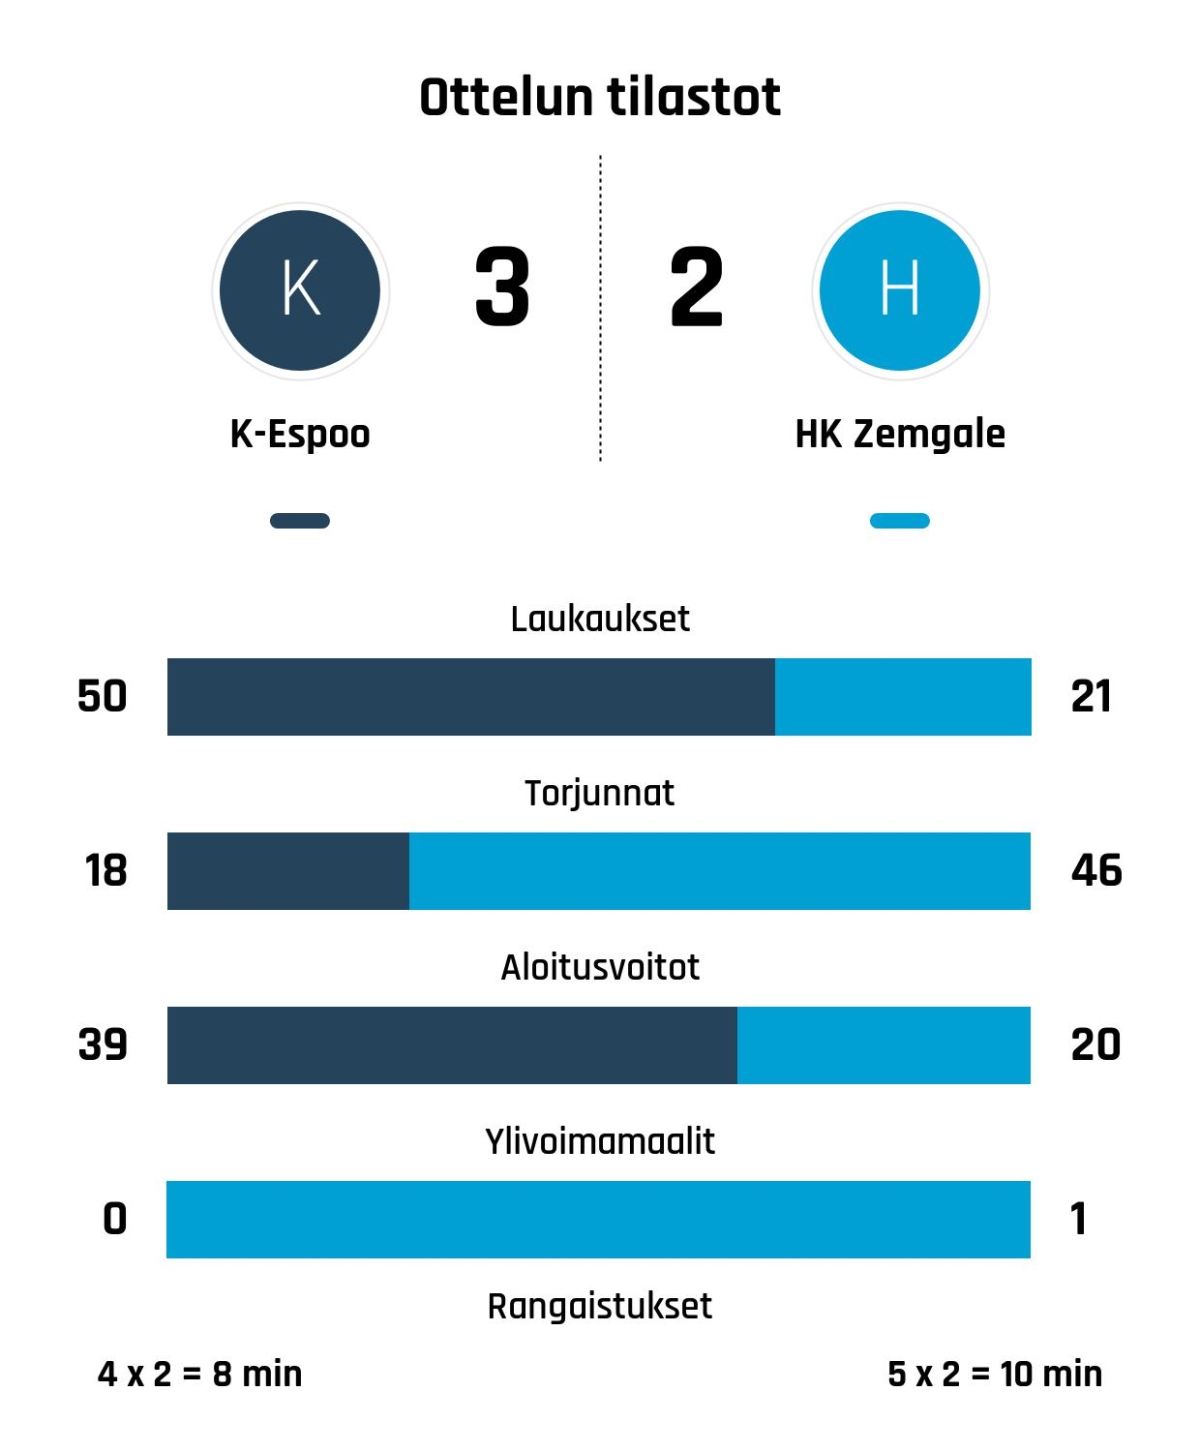 K-Espoo nousi tappioasemasta voittoon HK Zemgalea vastaan